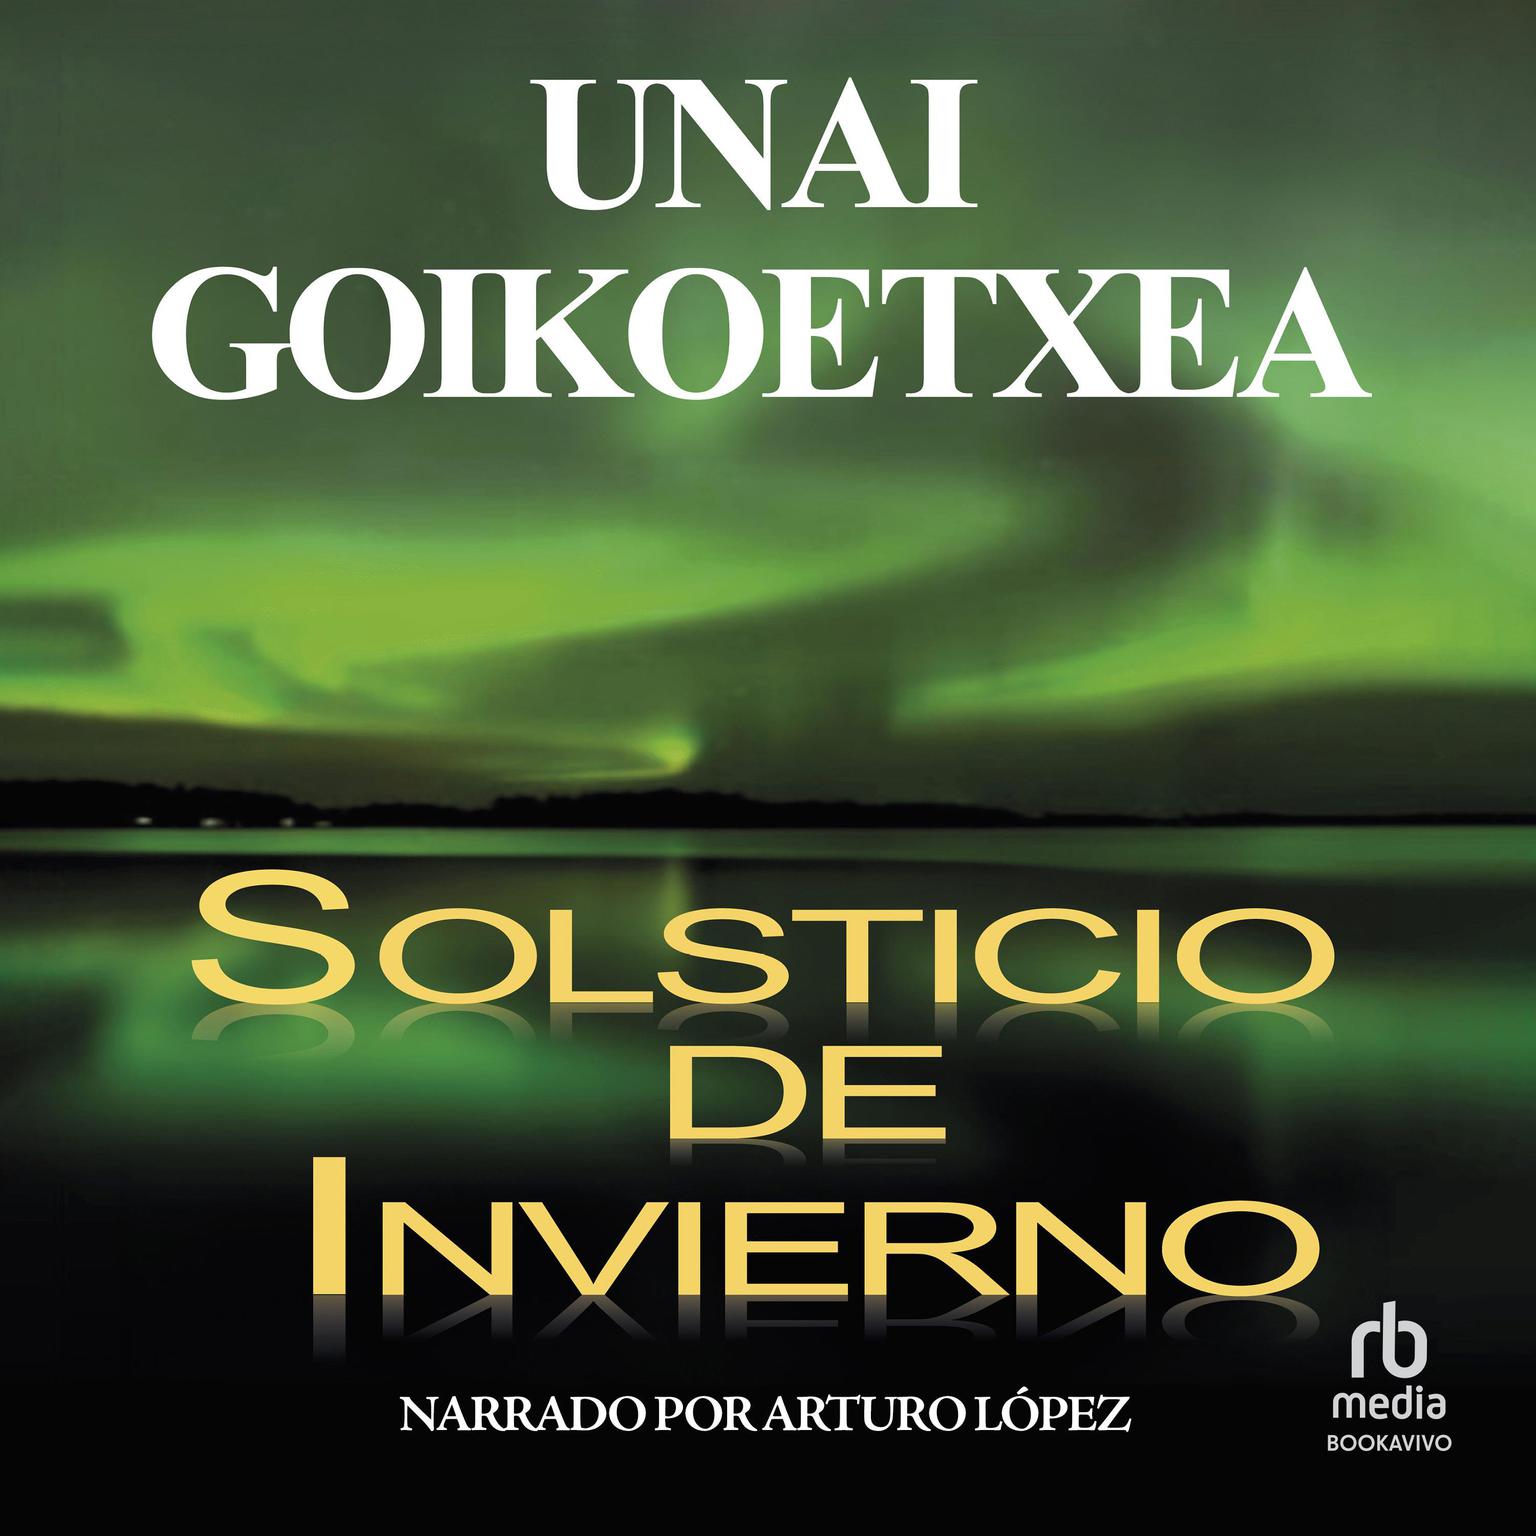 Solsticio de invierno (Winter Solstice) Audiobook, by Unai Goikoetxea